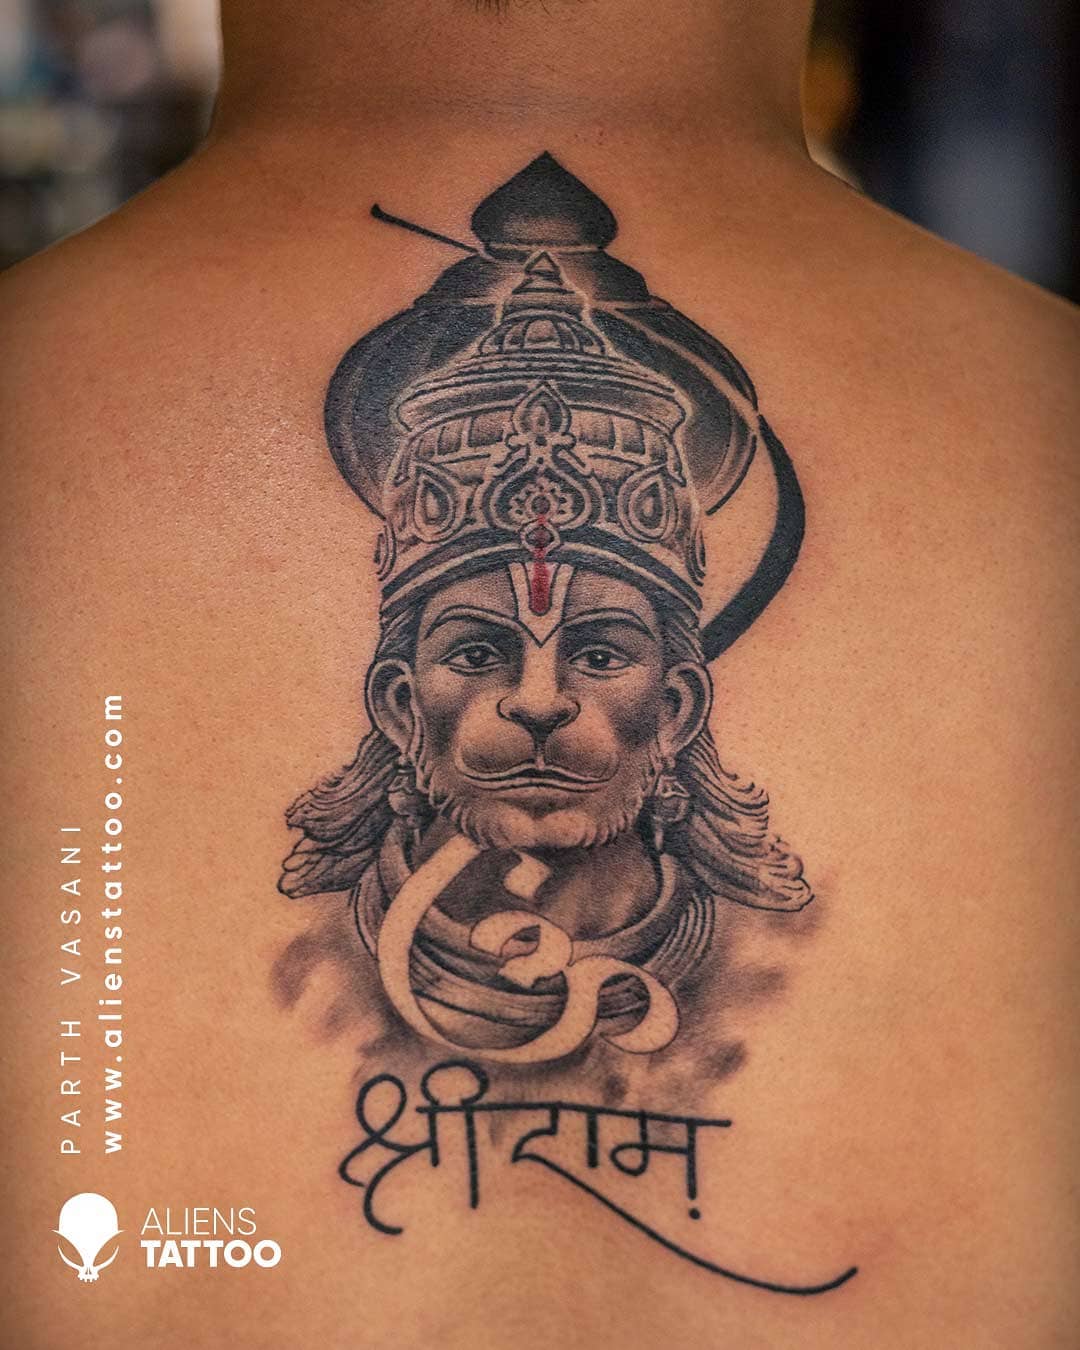 Hanuman Tattoo | Hanuman tattoo, Tattoo designs, Tattoos-nlmtdanang.com.vn